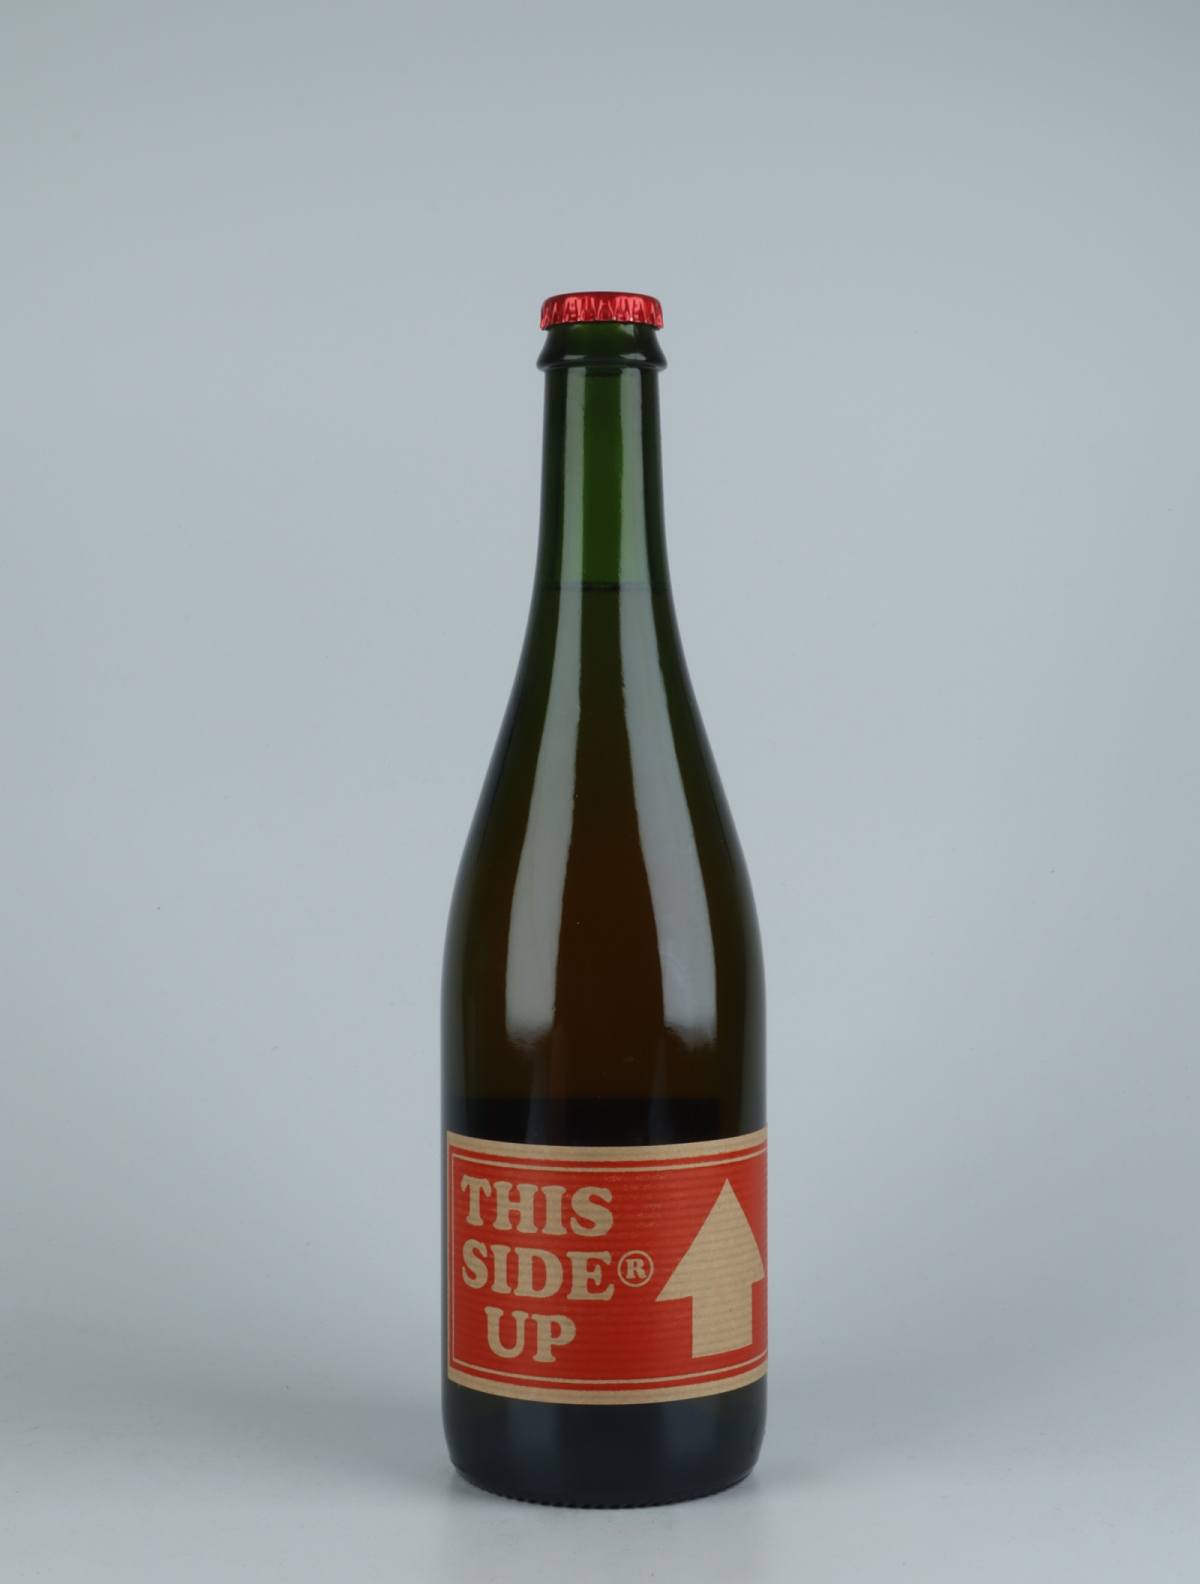 En flaske 2019 This Sider Up Cider fra Cyril Zangs, Normandiet i Frankrig